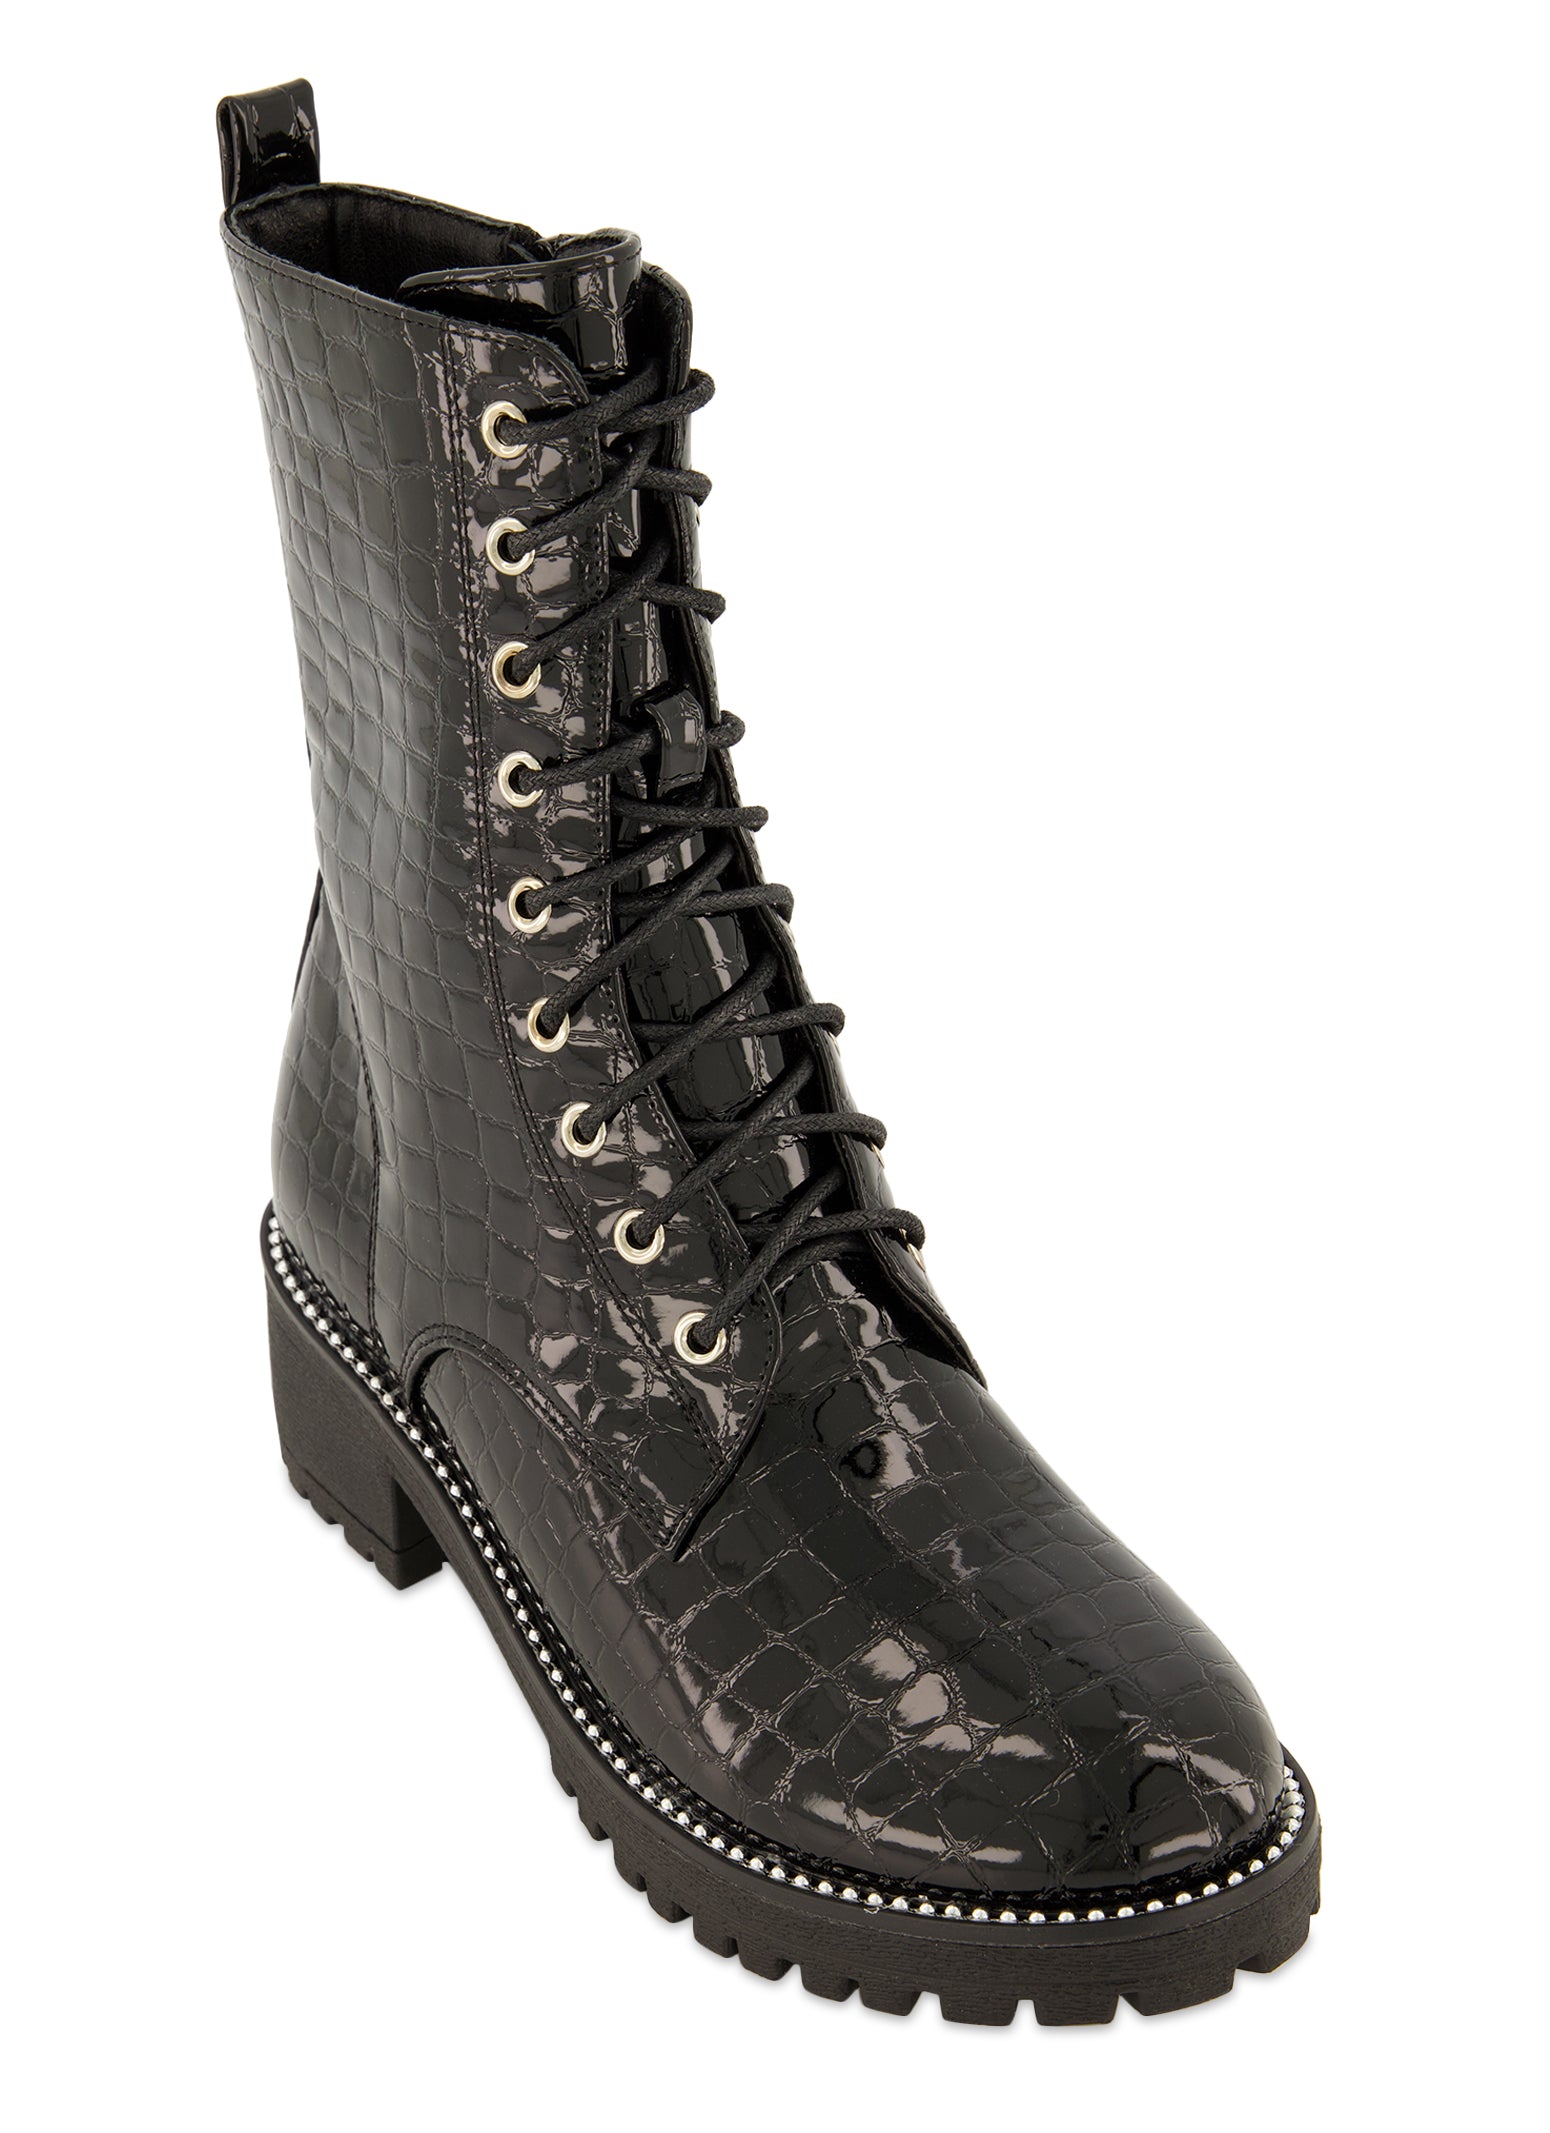 DKNY Women's Talma Lace-Up Combat Boots - Macy's